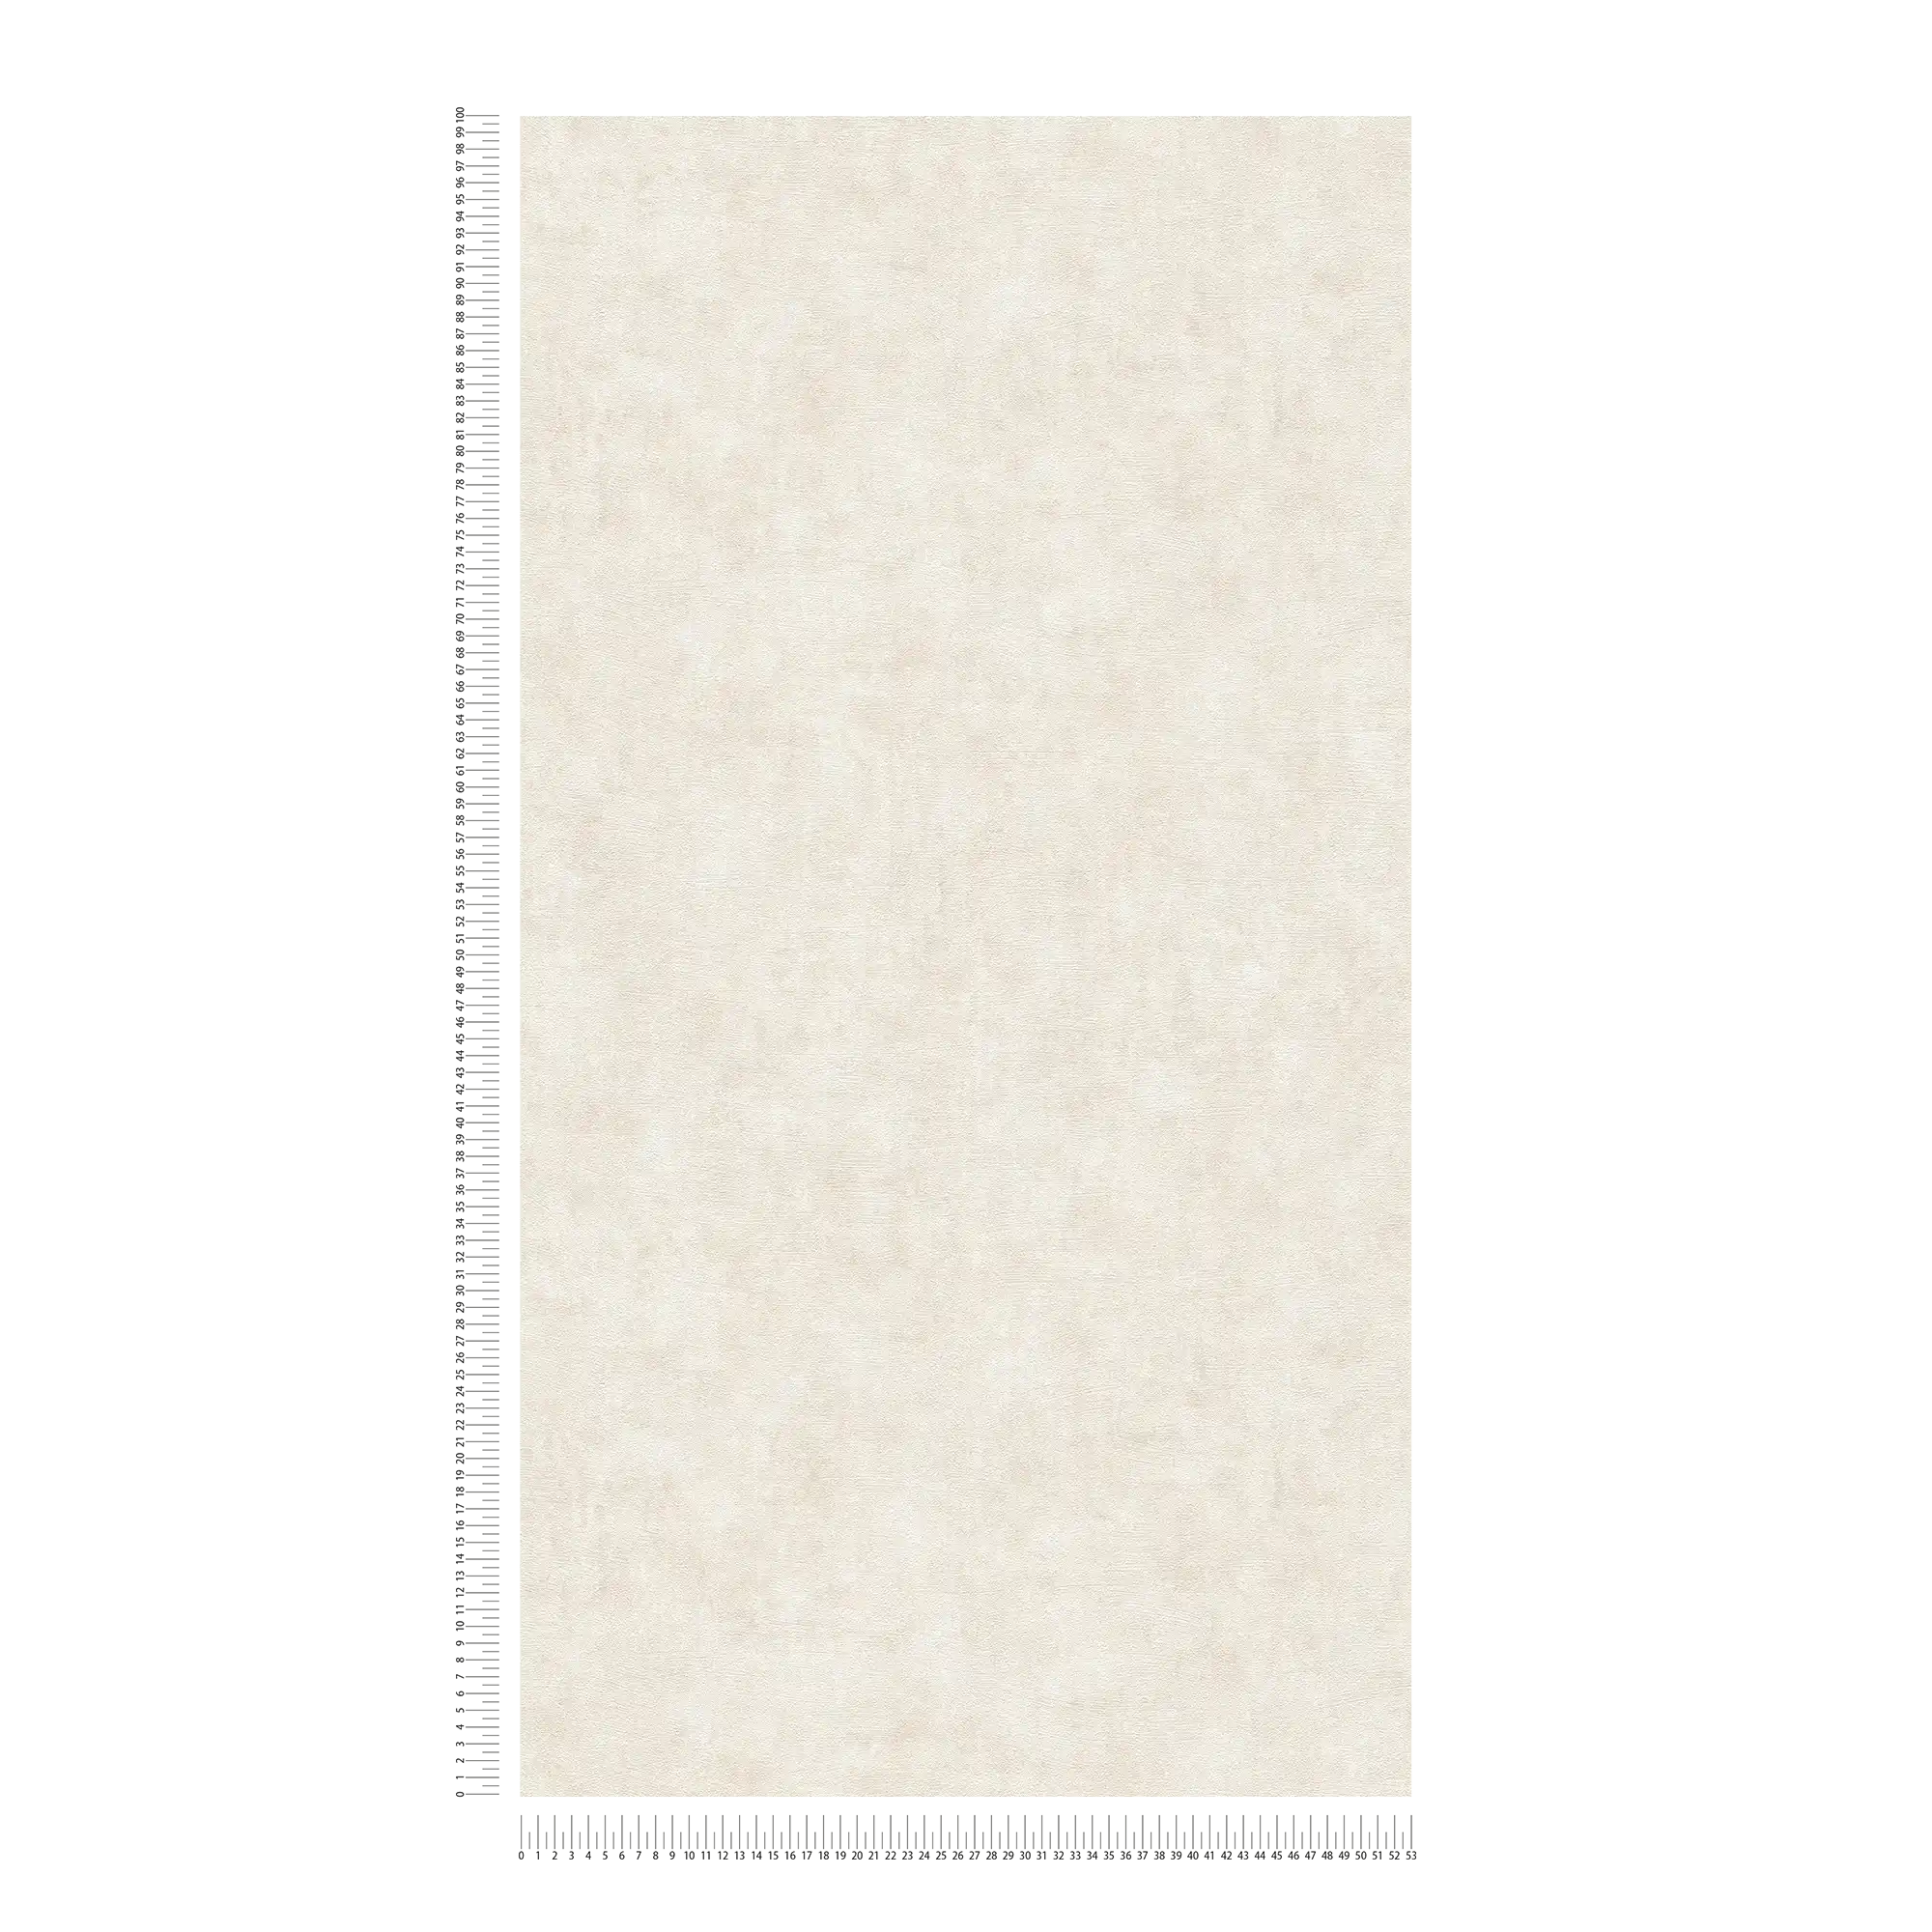             Papier peint intissé à motifs structurés unis - crème, beige
        